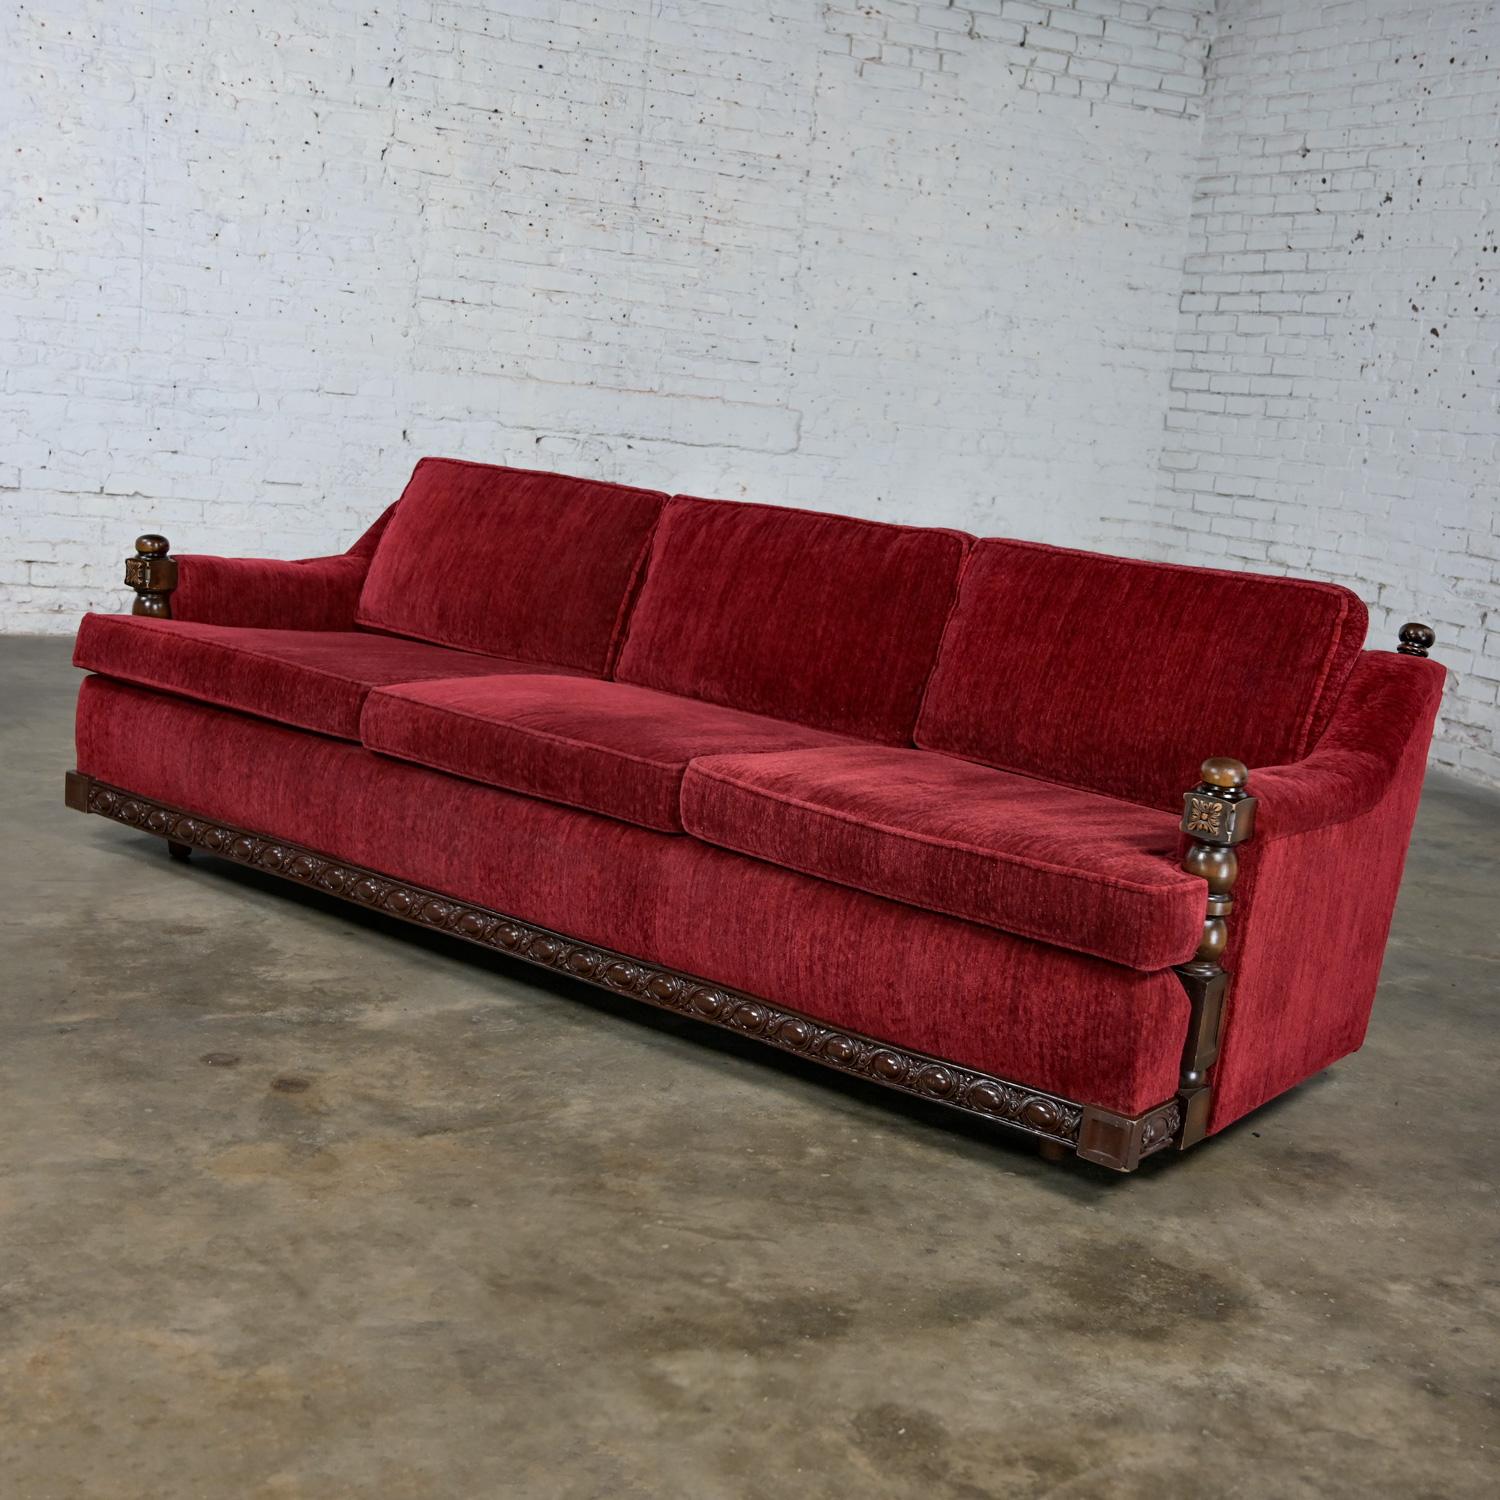 Wunderschönes, rustikales, rotes Chenille-Sofa im Stil der Artes De Mexico Internationales im spanischen Revival-Stil. Bestehend aus einem dunklen Holzrahmen, drei mit Schaumstoff gefüllten, losen Sitzkissen mit Reißverschluss und drei losen, mit